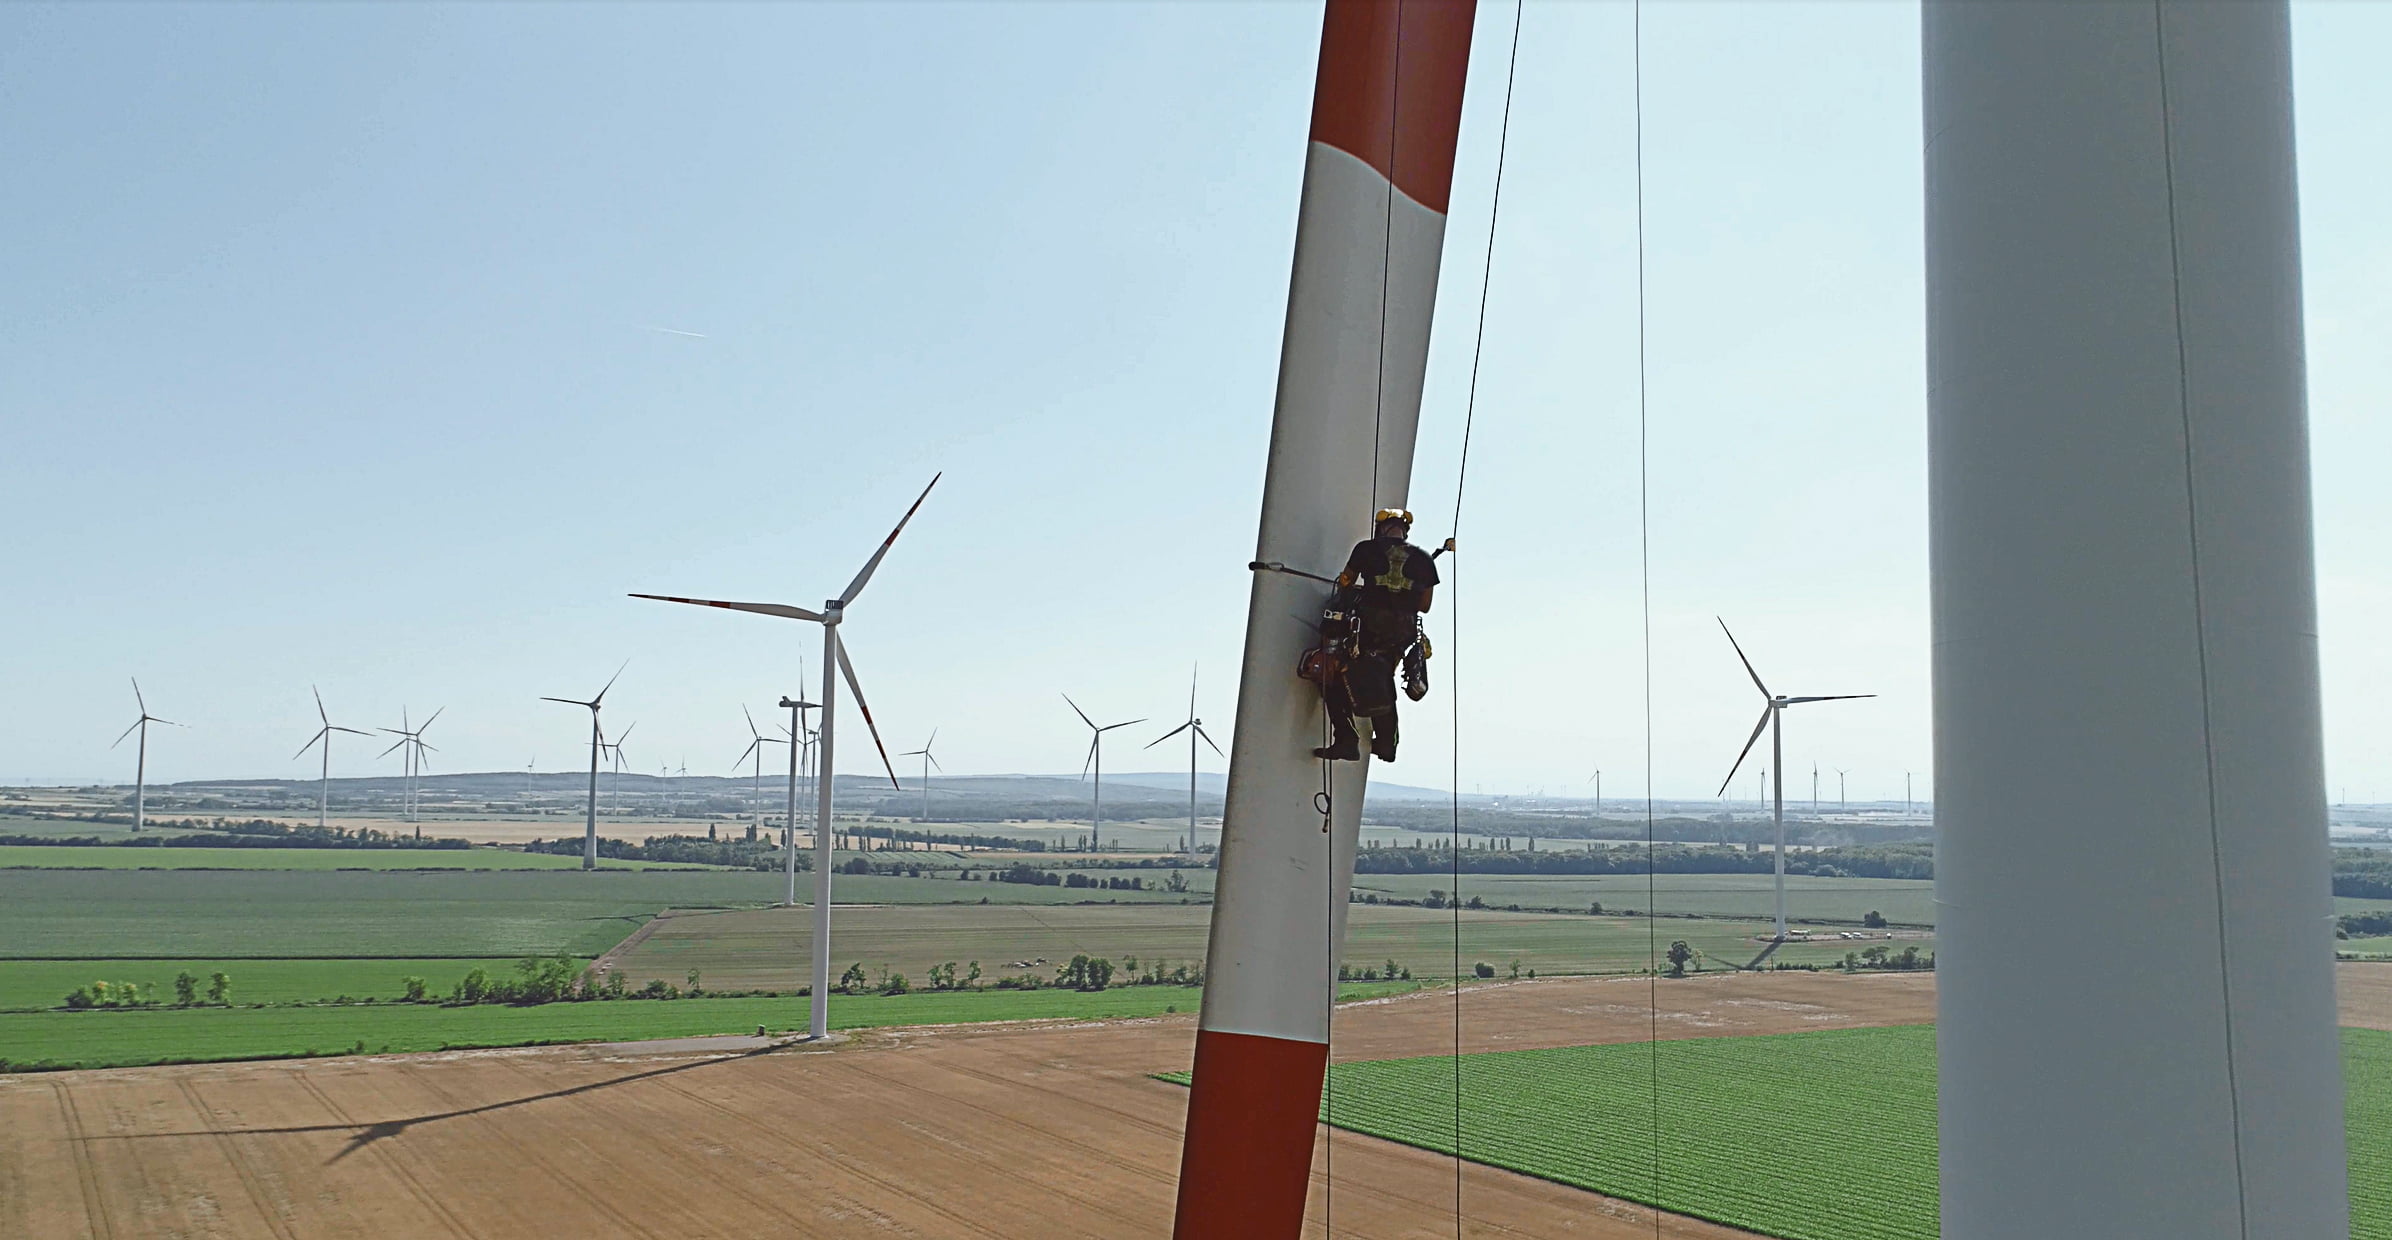 Industriekletterer:innen in der Windenergie

